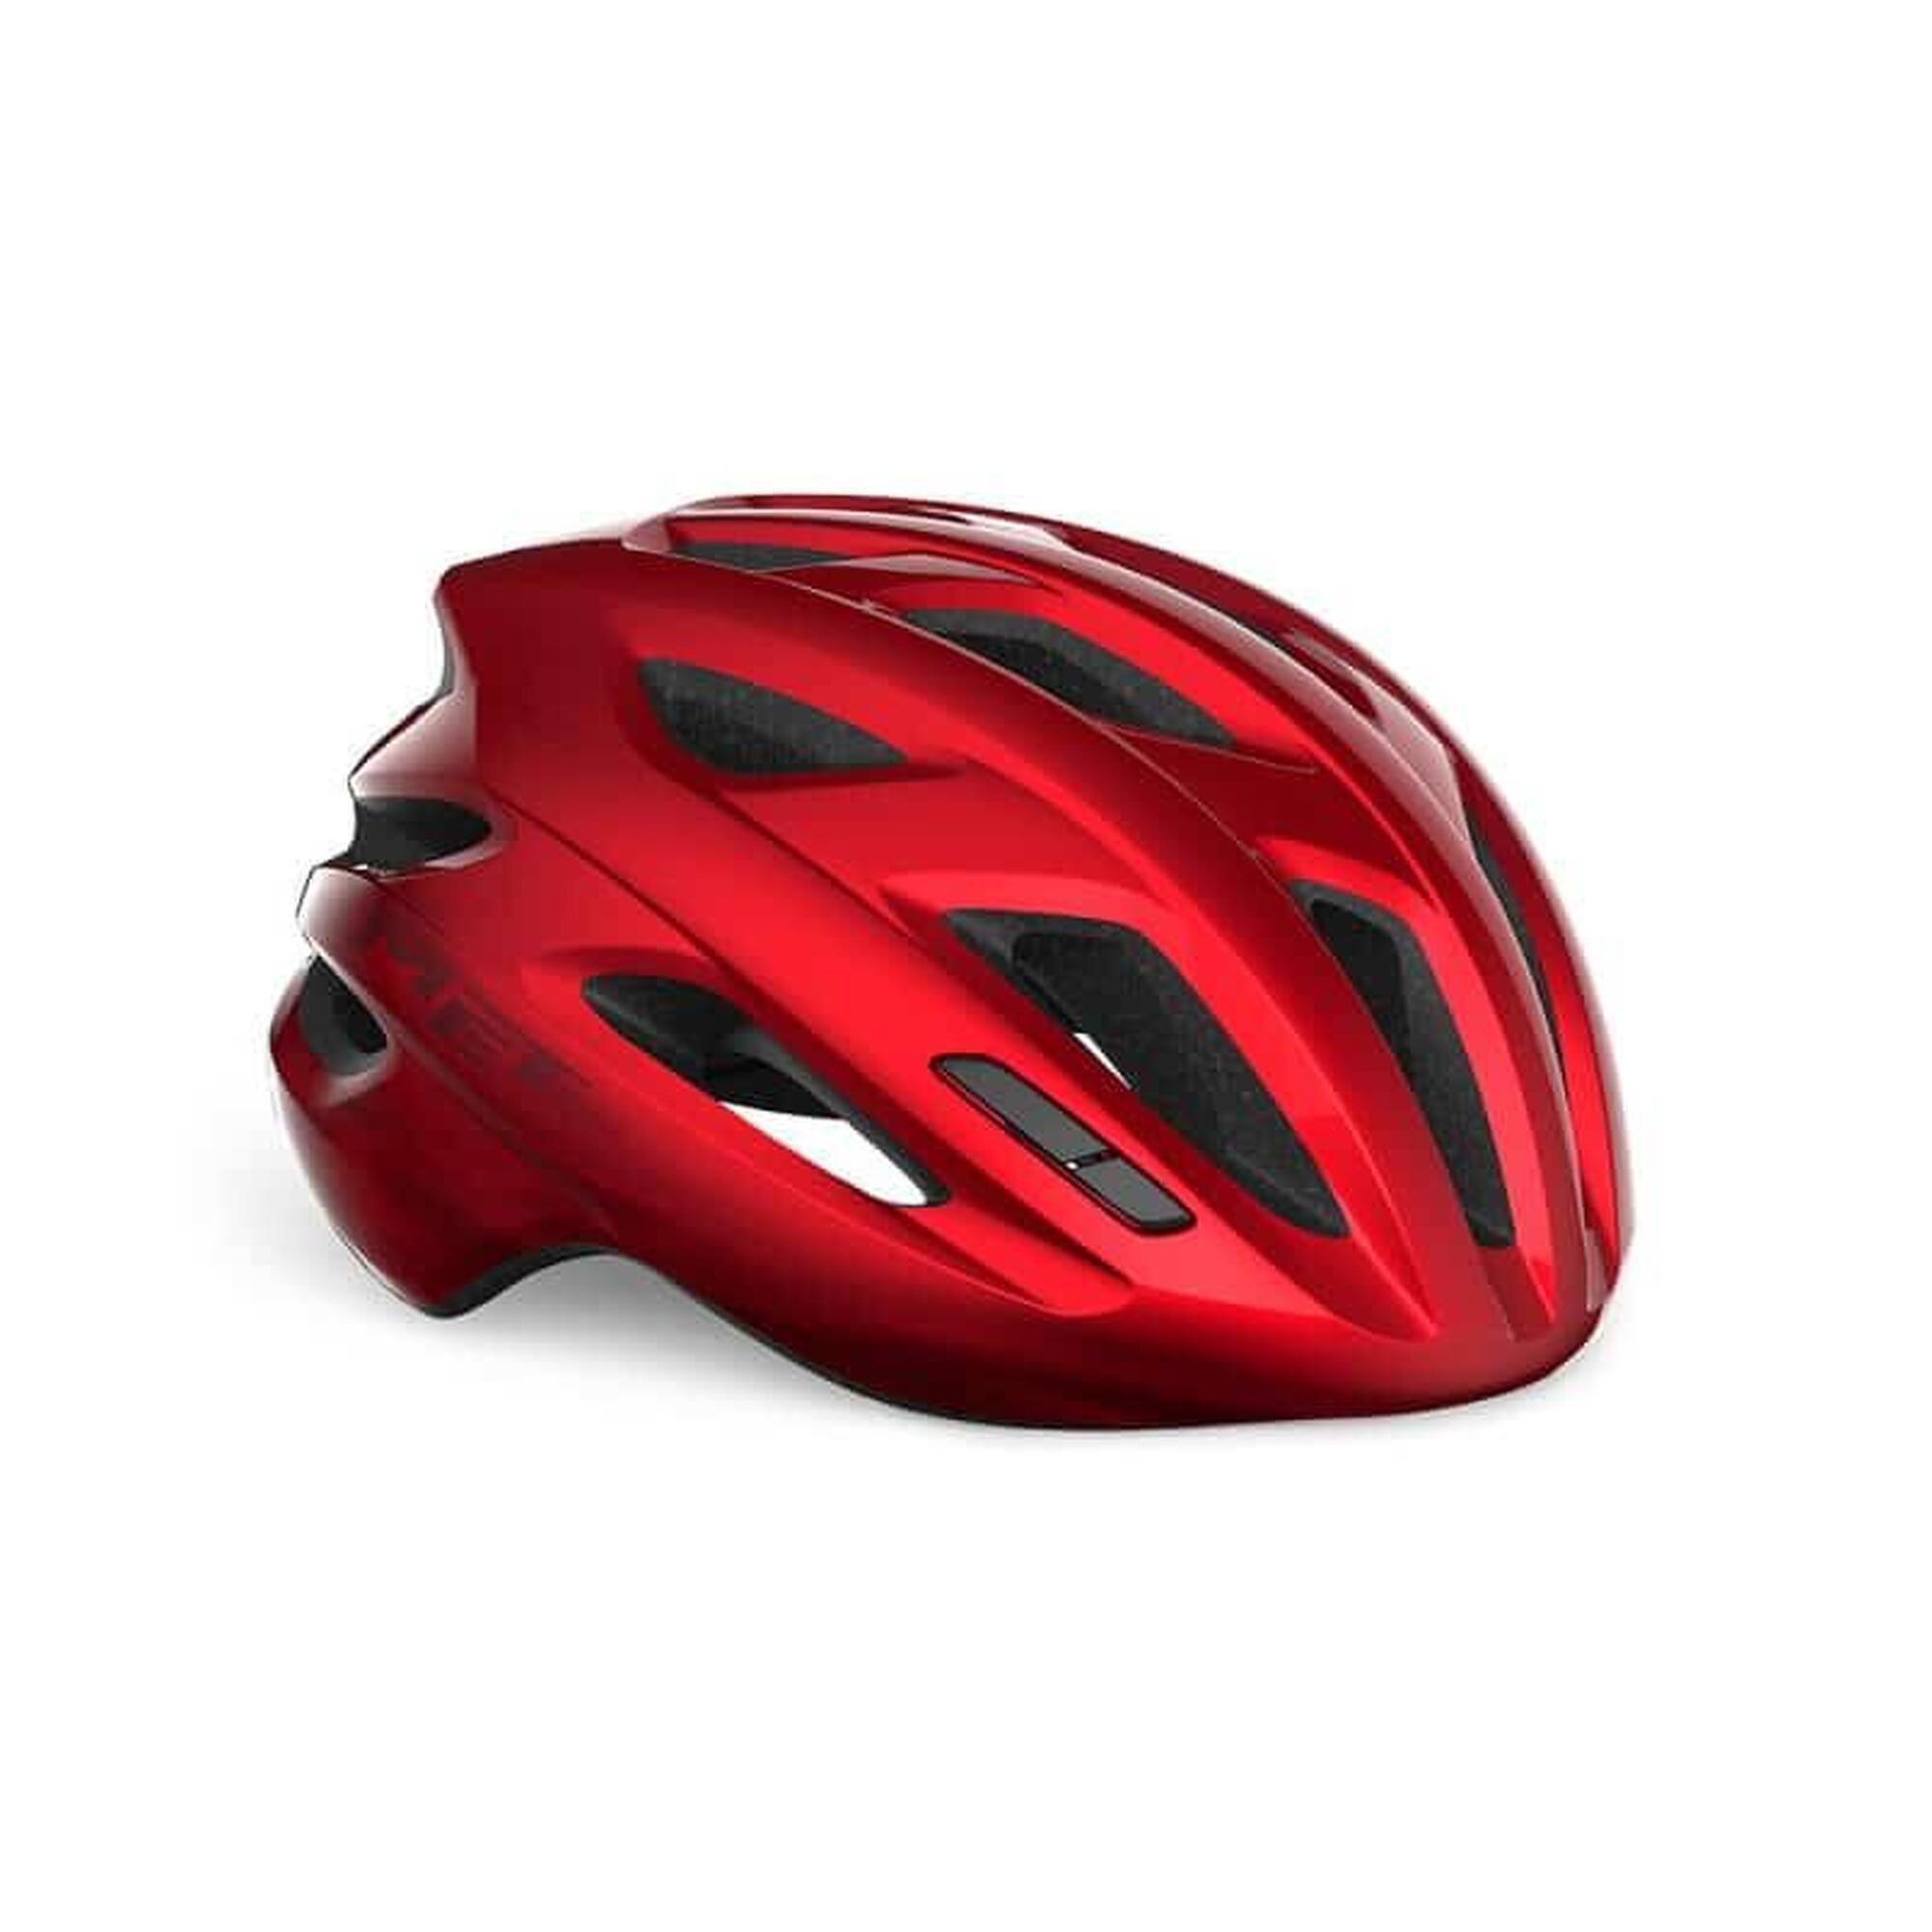 MET IDOLO MIPS Red Metallic UN Road Bike Helmet 1/6